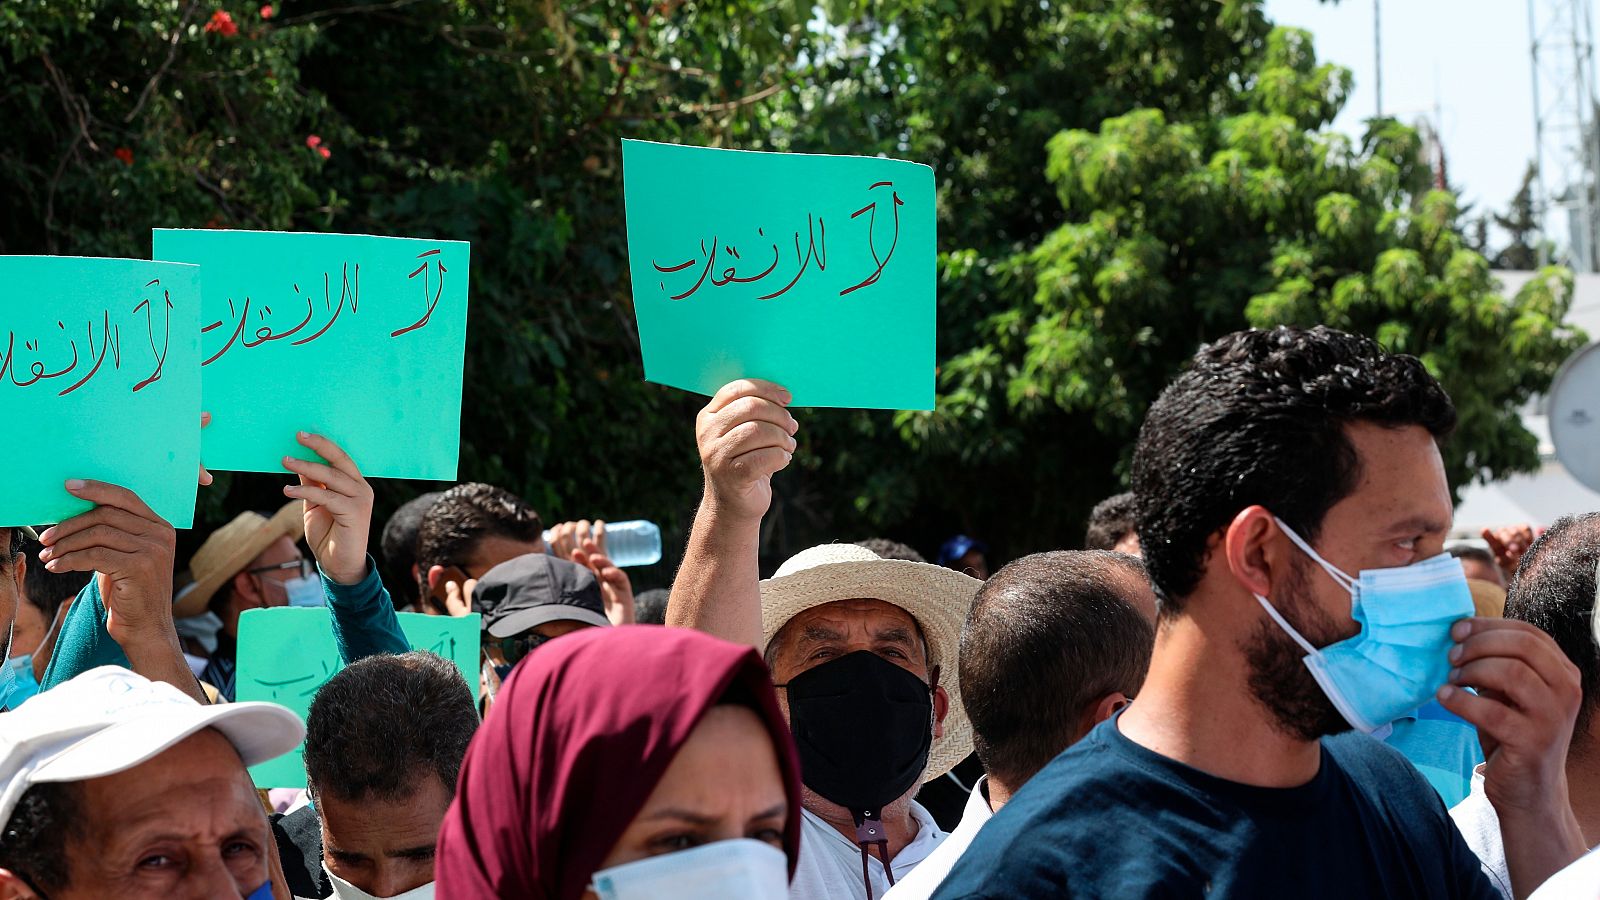 Se agrava la crisis en Túnez y España llama a la calma